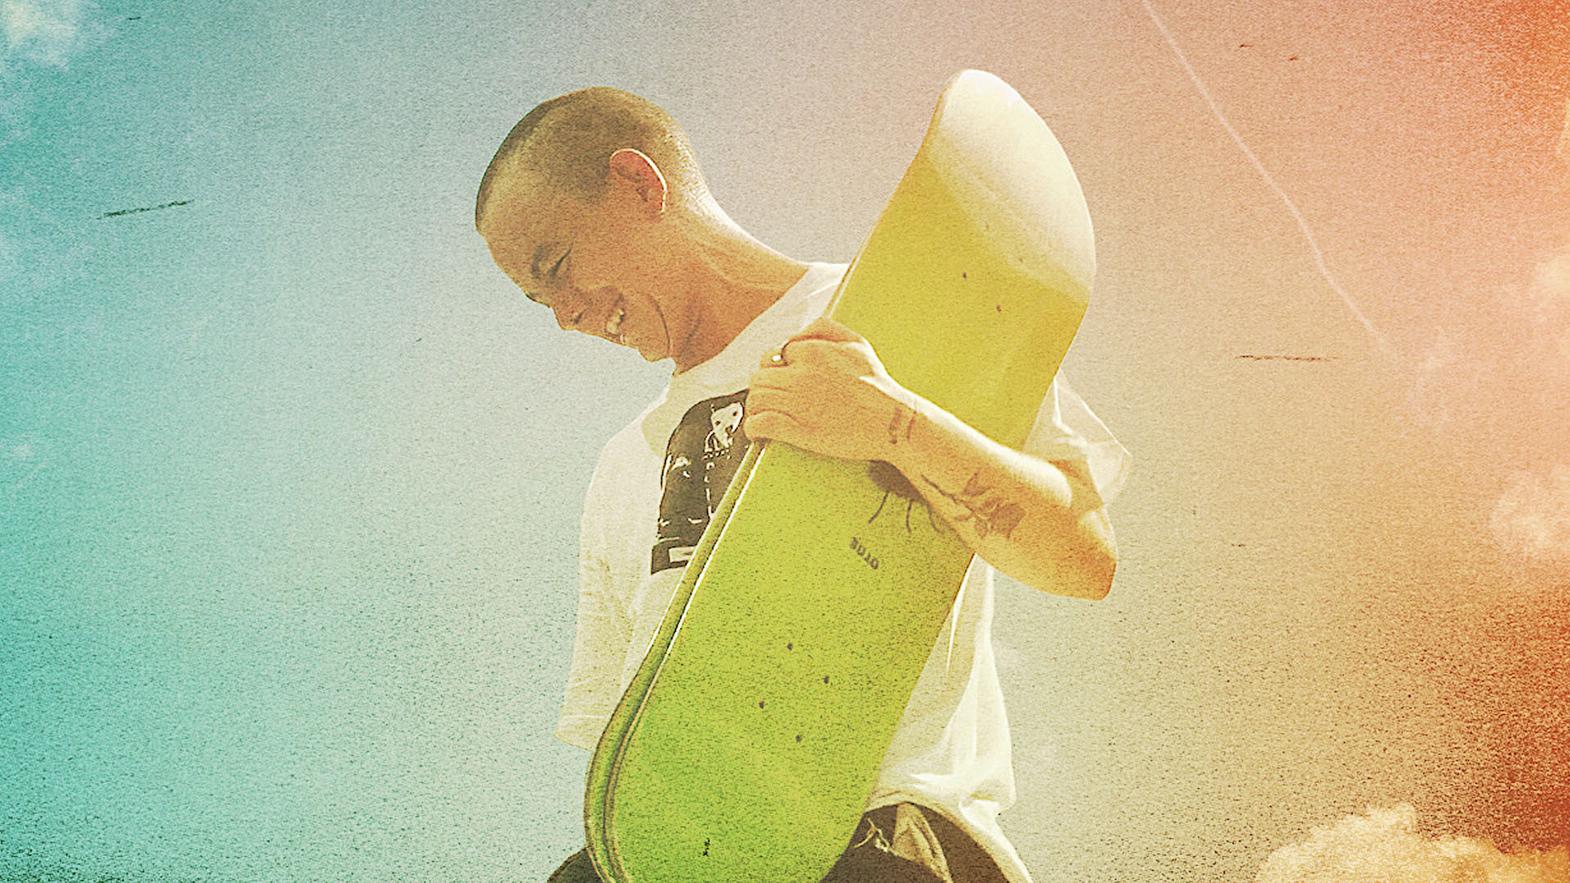 Trans skateboarder Leo Baker stays on board in new Netflix documentary